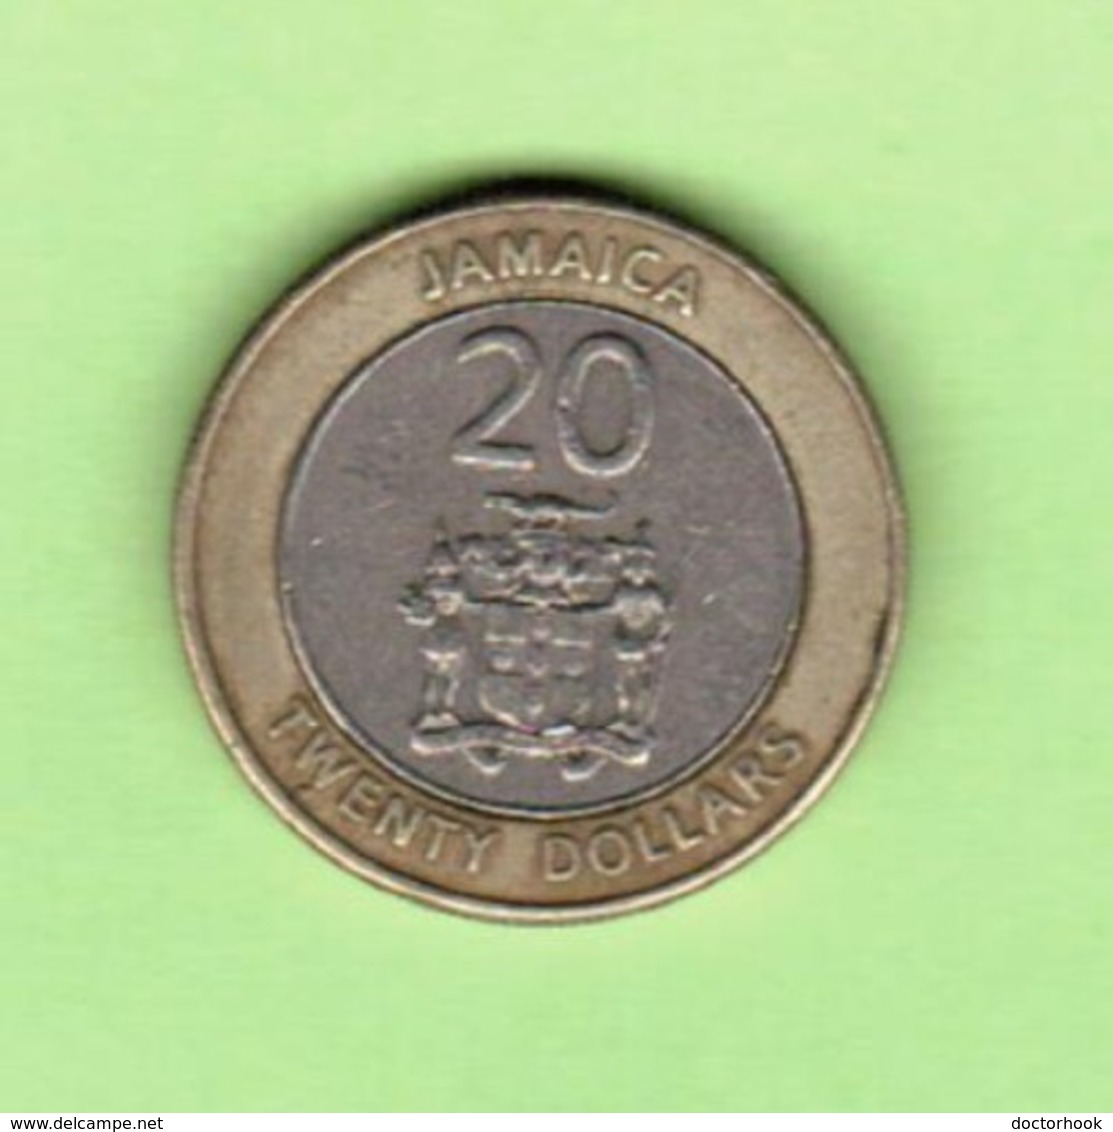 JAMAICA   $20.00 DOLLARS 2000  (KM # 182) #5204 - Jamaique